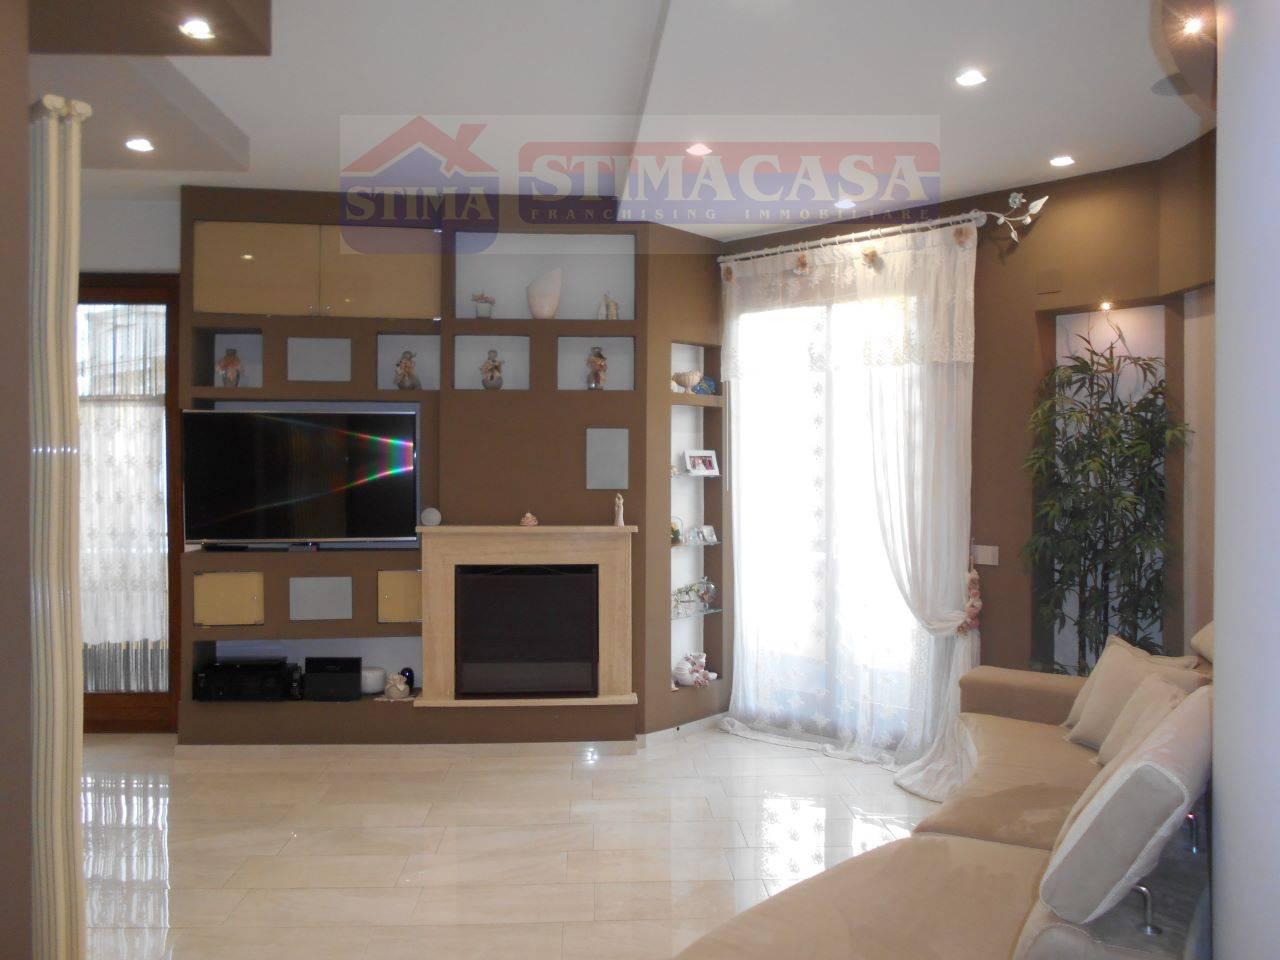 Appartamento in vendita a Cardito, 4 locali, prezzo € 250.000 | PortaleAgenzieImmobiliari.it